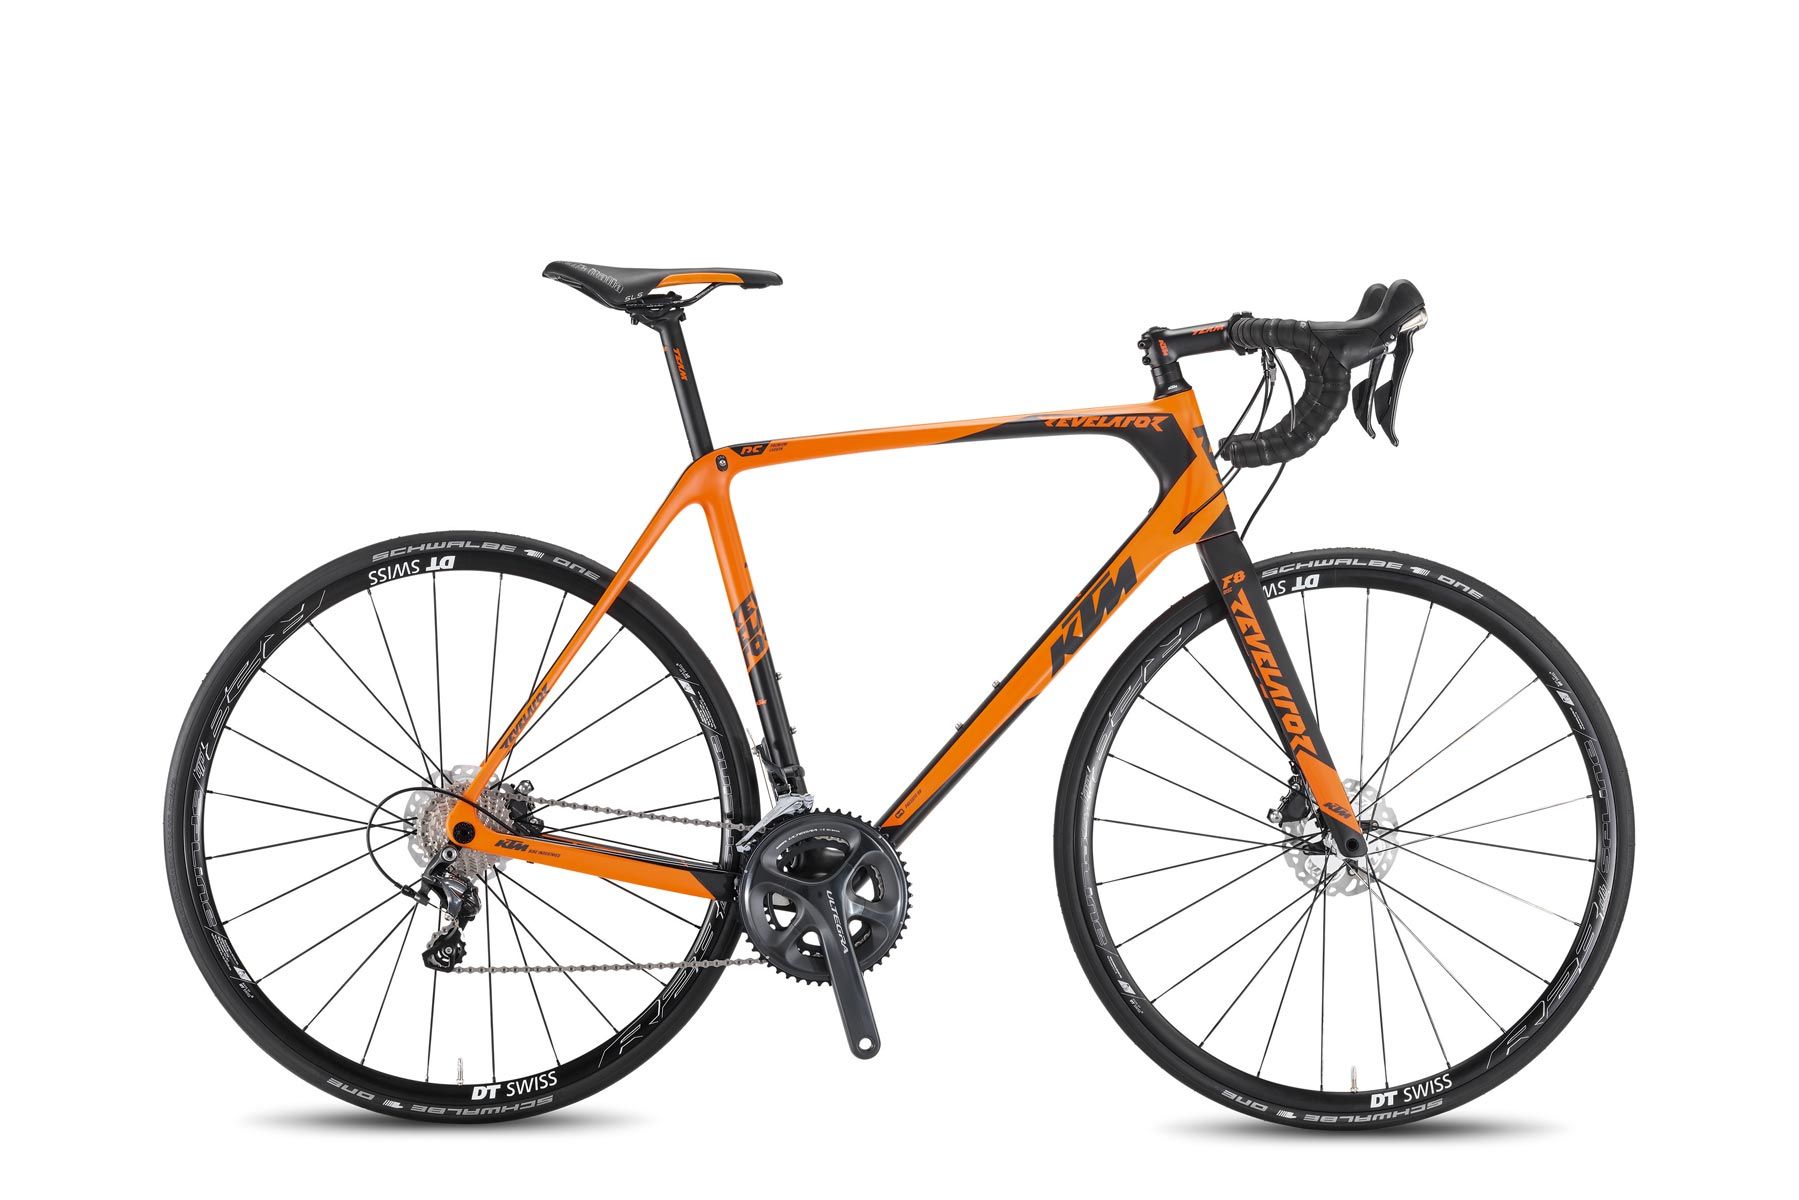  Отзывы о Шоссейном велосипеде KTM Revelator Sky orange 2016